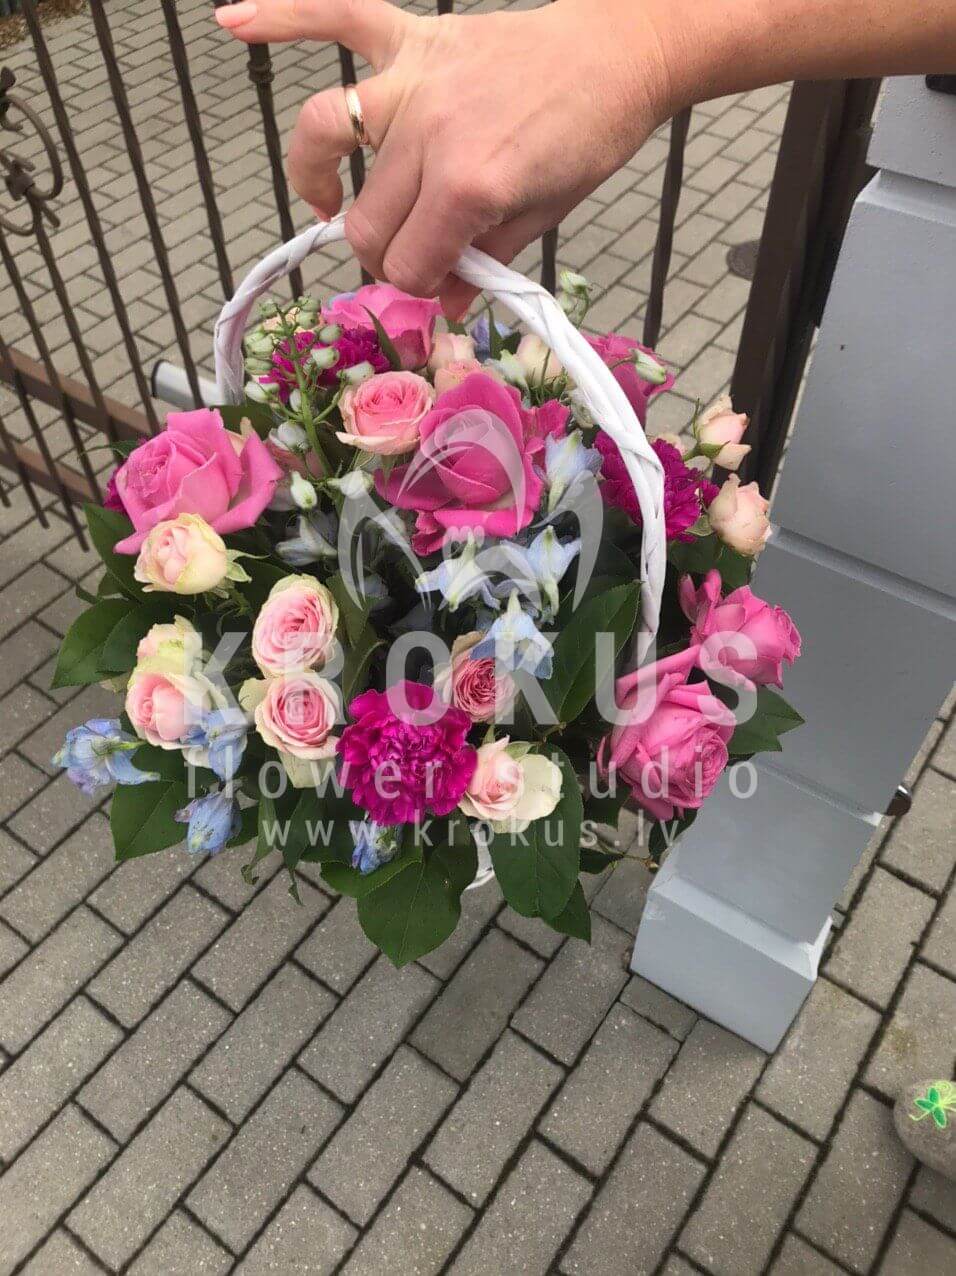 Доставка цветов в город Baloži (кустовые розырозовые розыгвоздикистатицаваксфлауэрсалал)